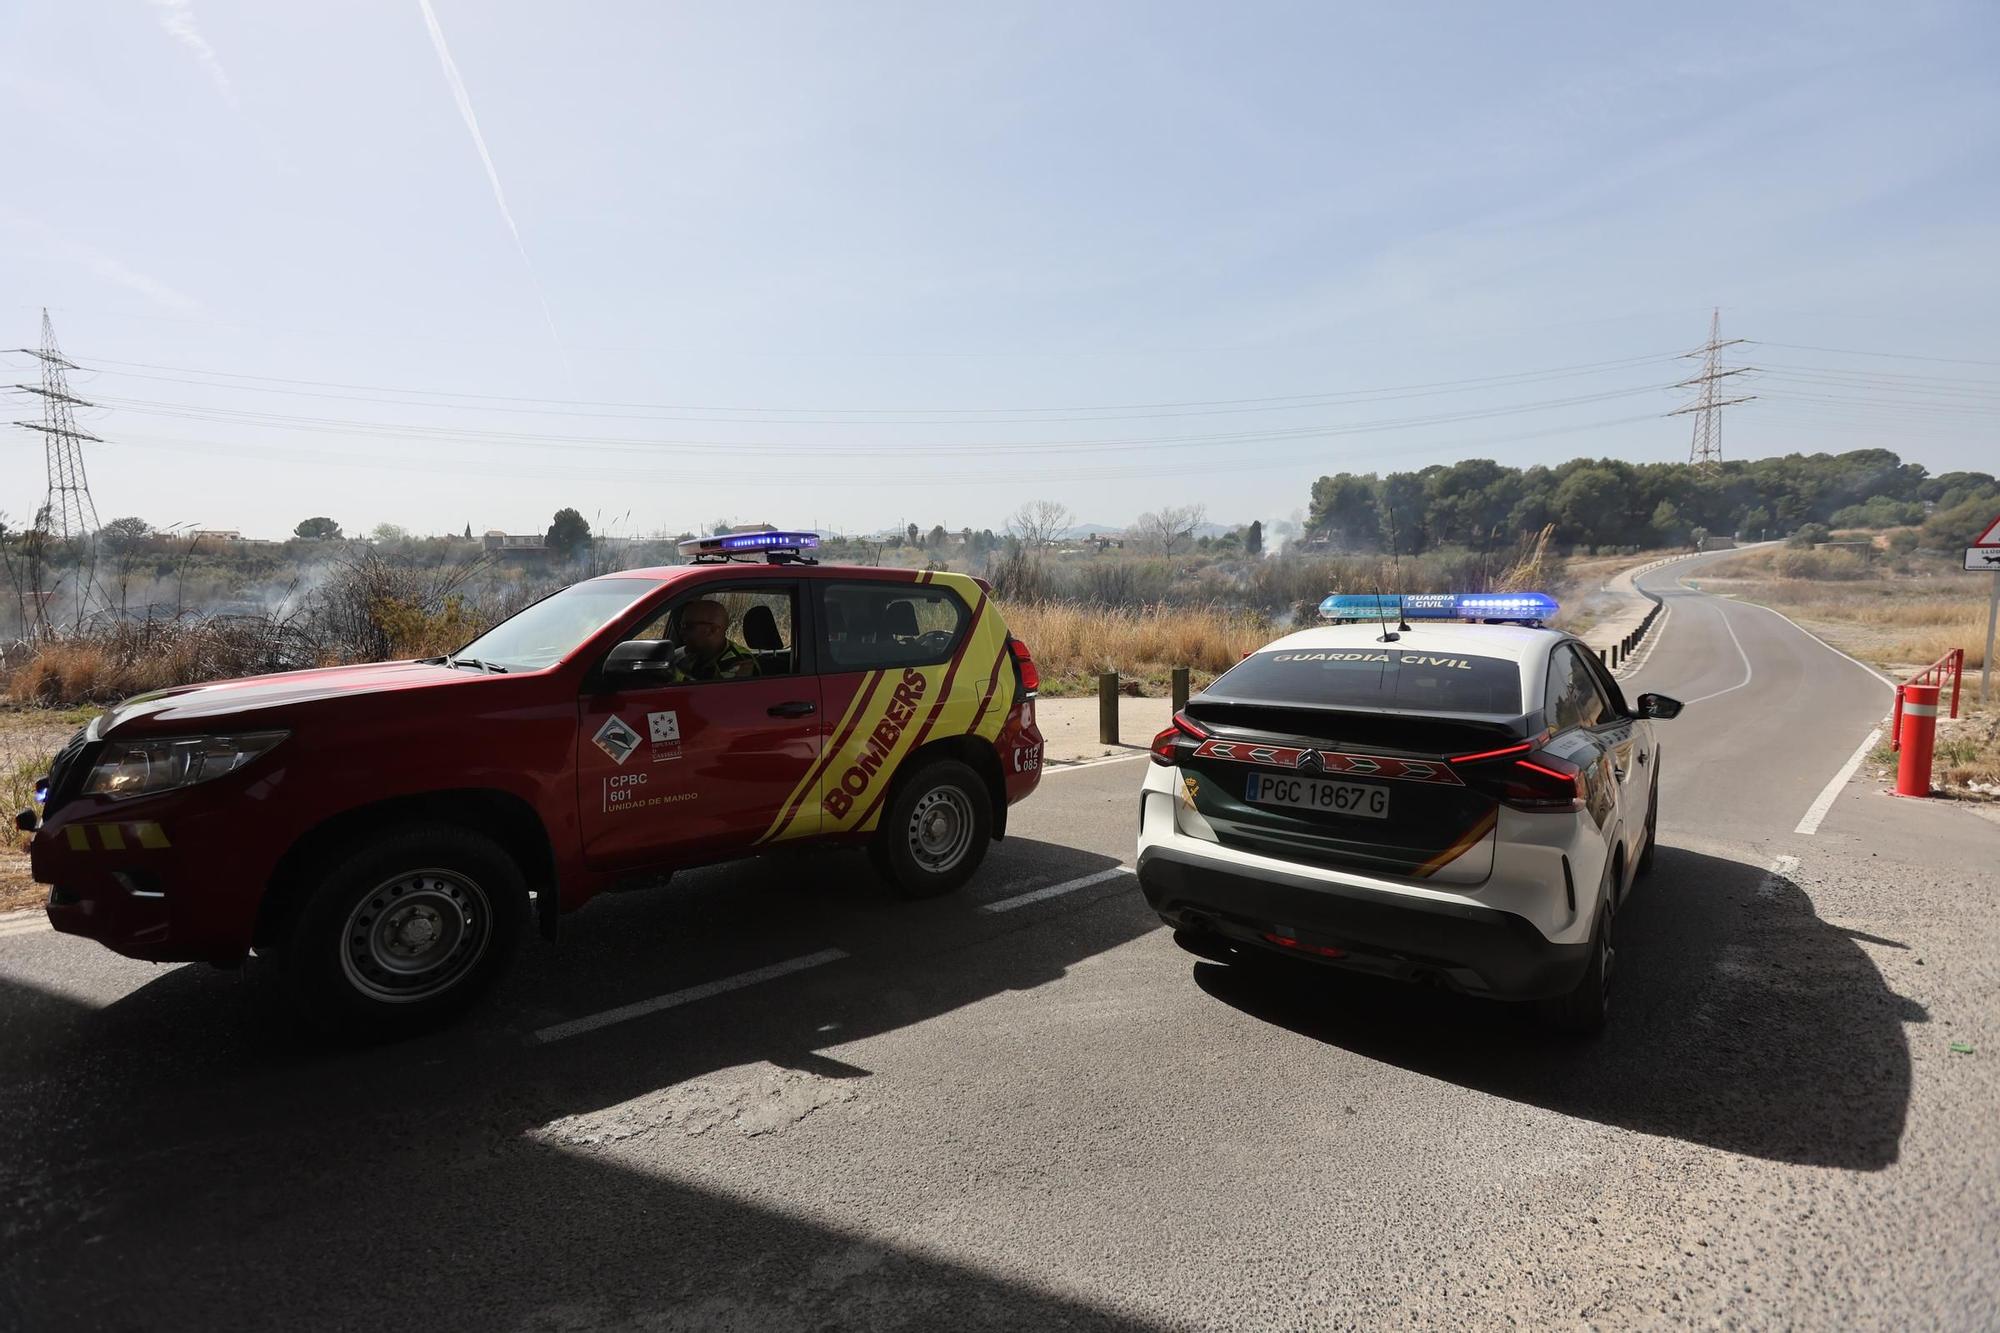 Galería de fotos del incendio forestal en el río Millars entre Vila-real y Almassora